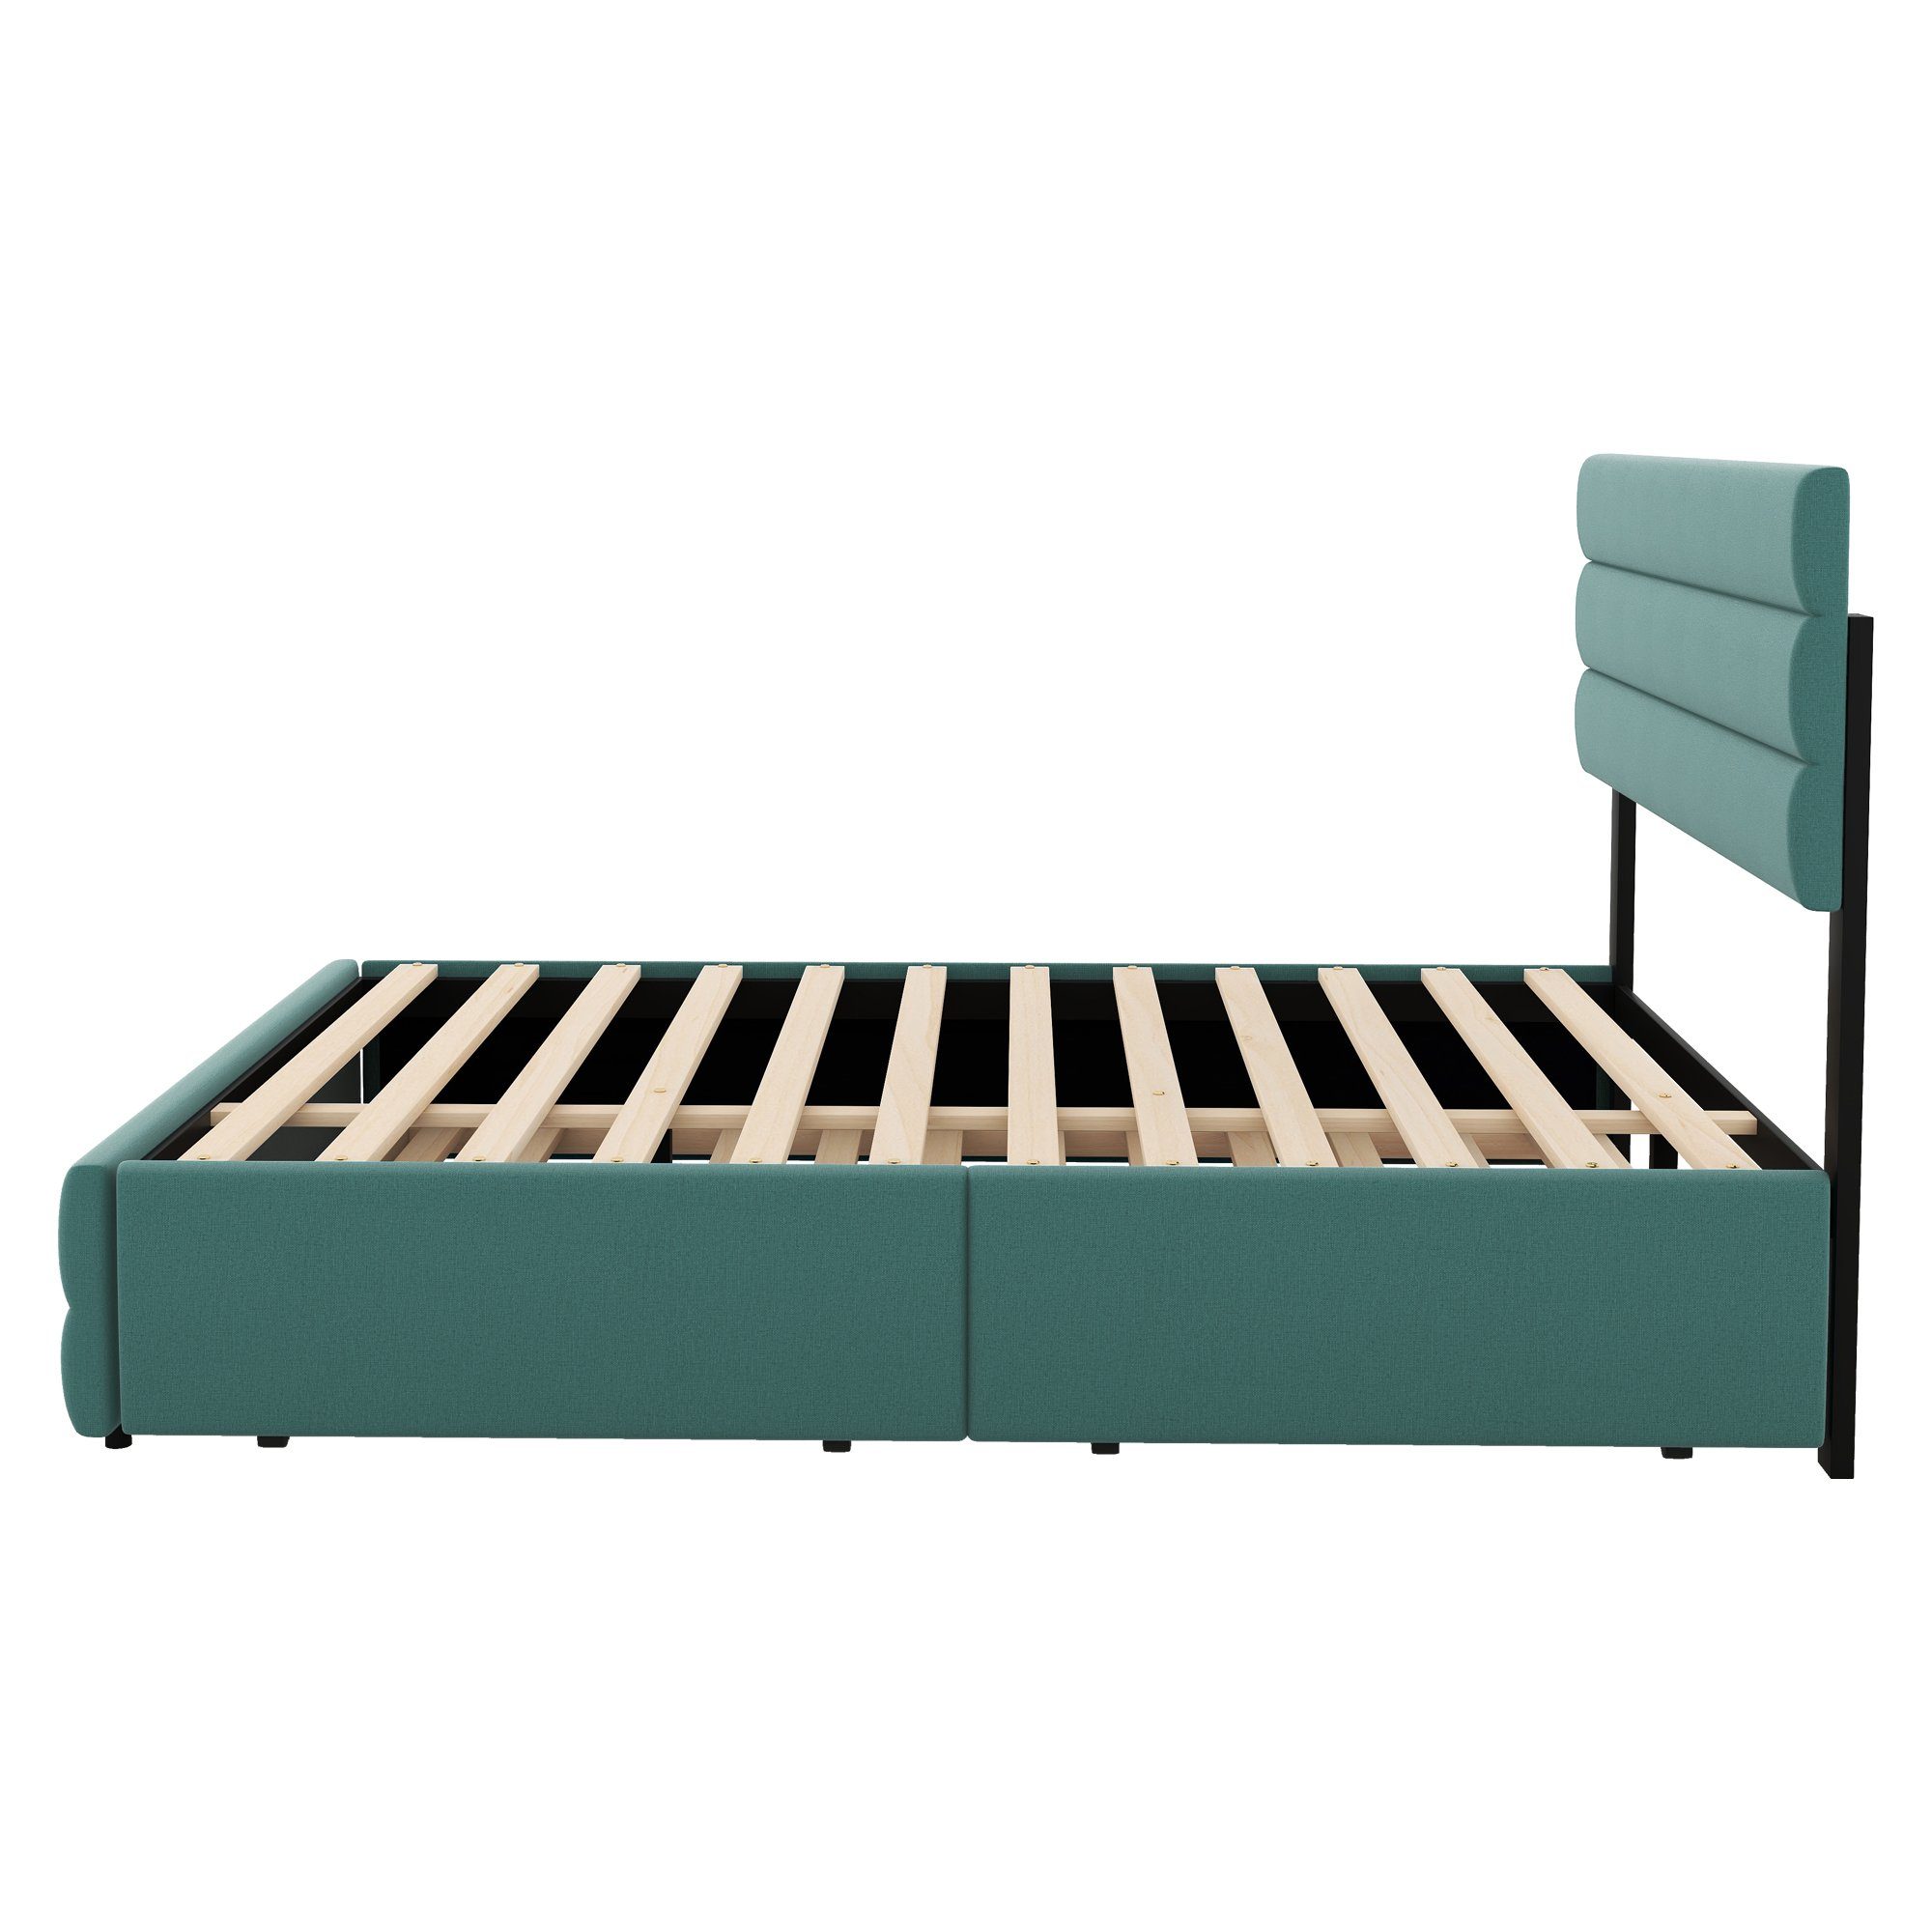 Polsterbett Doppelbett mit Schubladen, 90x190cm, Liegefläche mit Grün Merax Lattenrost, ausziehbarer 140x200cm